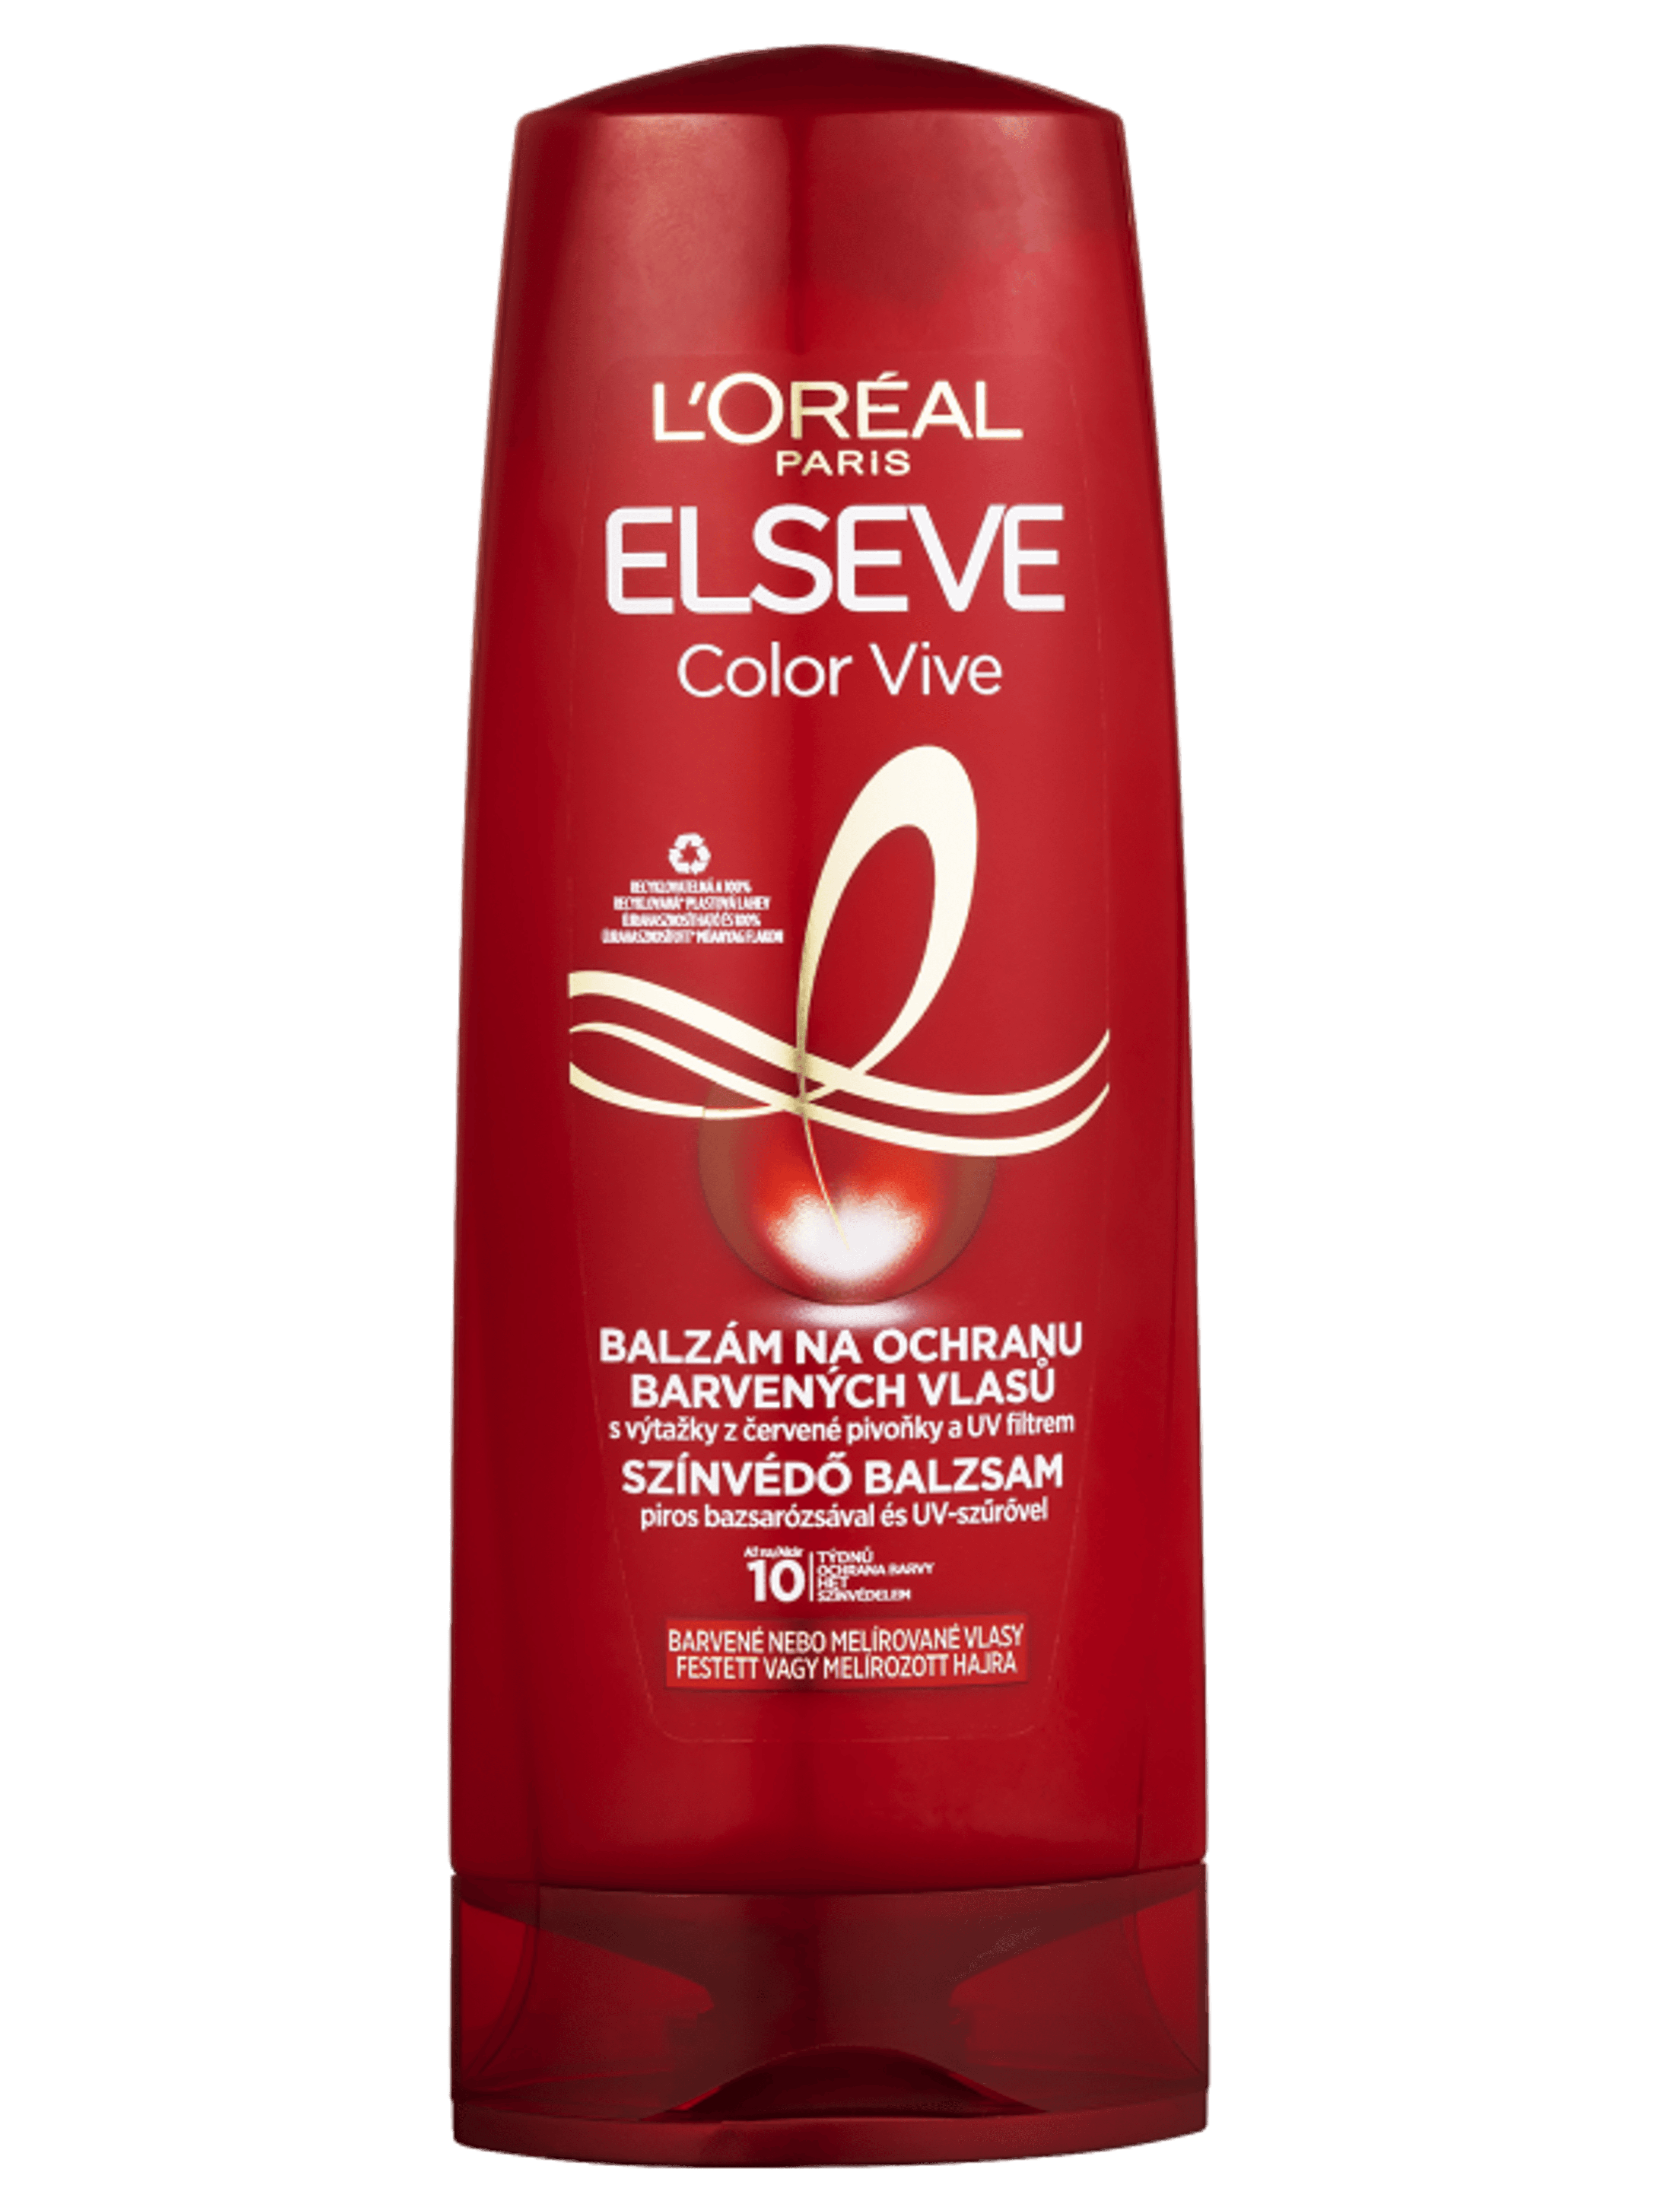 L'Oréal Paris Elseve Color-vive színvédő balzsam - 200 ml